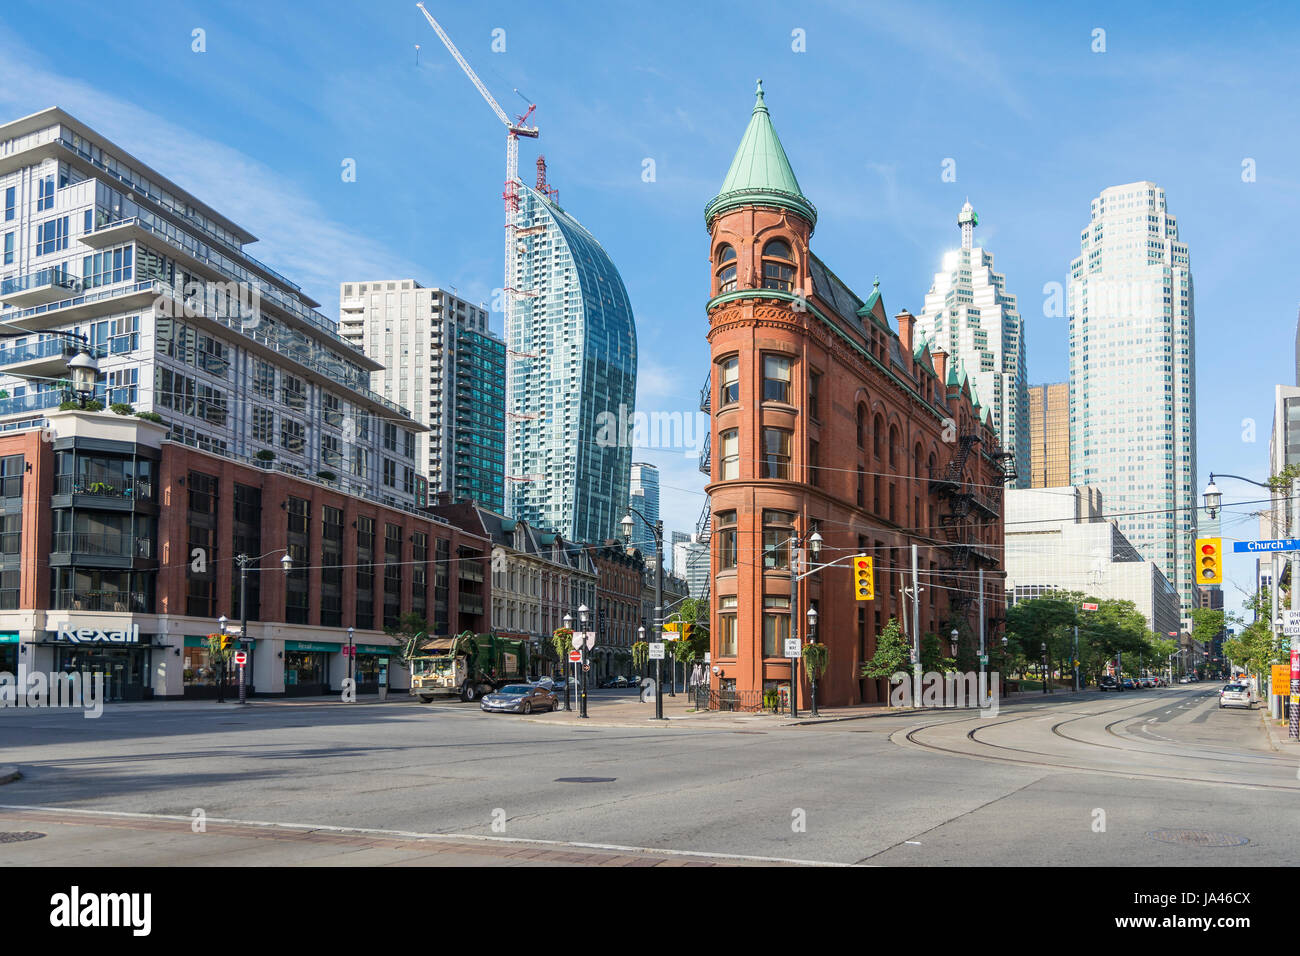 Toronto, Canada - le 2 août 2015 : vue de l'immeuble Gooderham (le Flatiron Building) au centre-ville de Toronto, avec quelques bâtiments modernes et gratte-ciel Banque D'Images